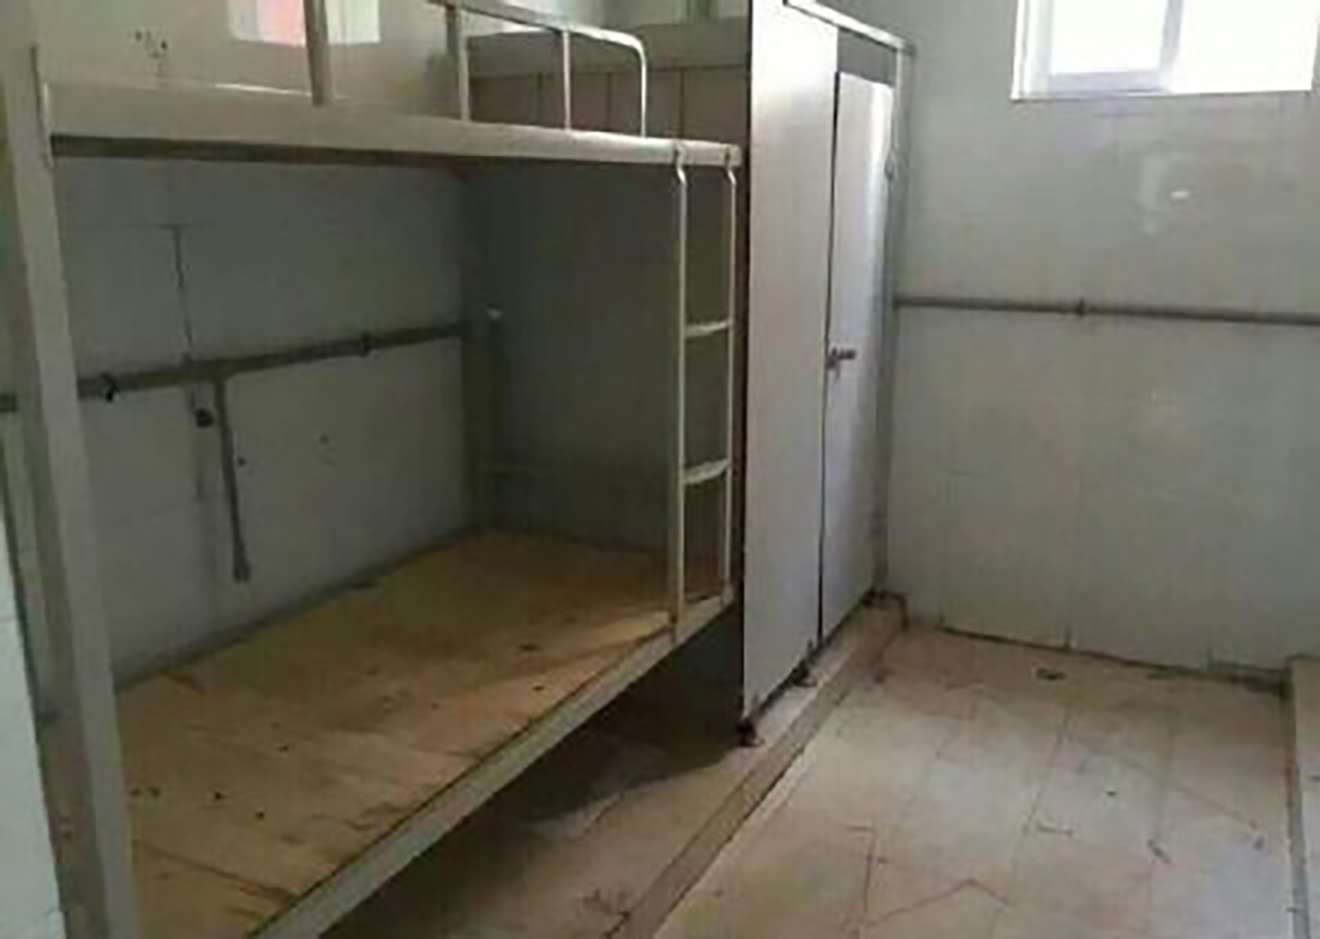 A világ legundorítóbb kollégiumi szobája: a vécében kaptak ágyakat 2